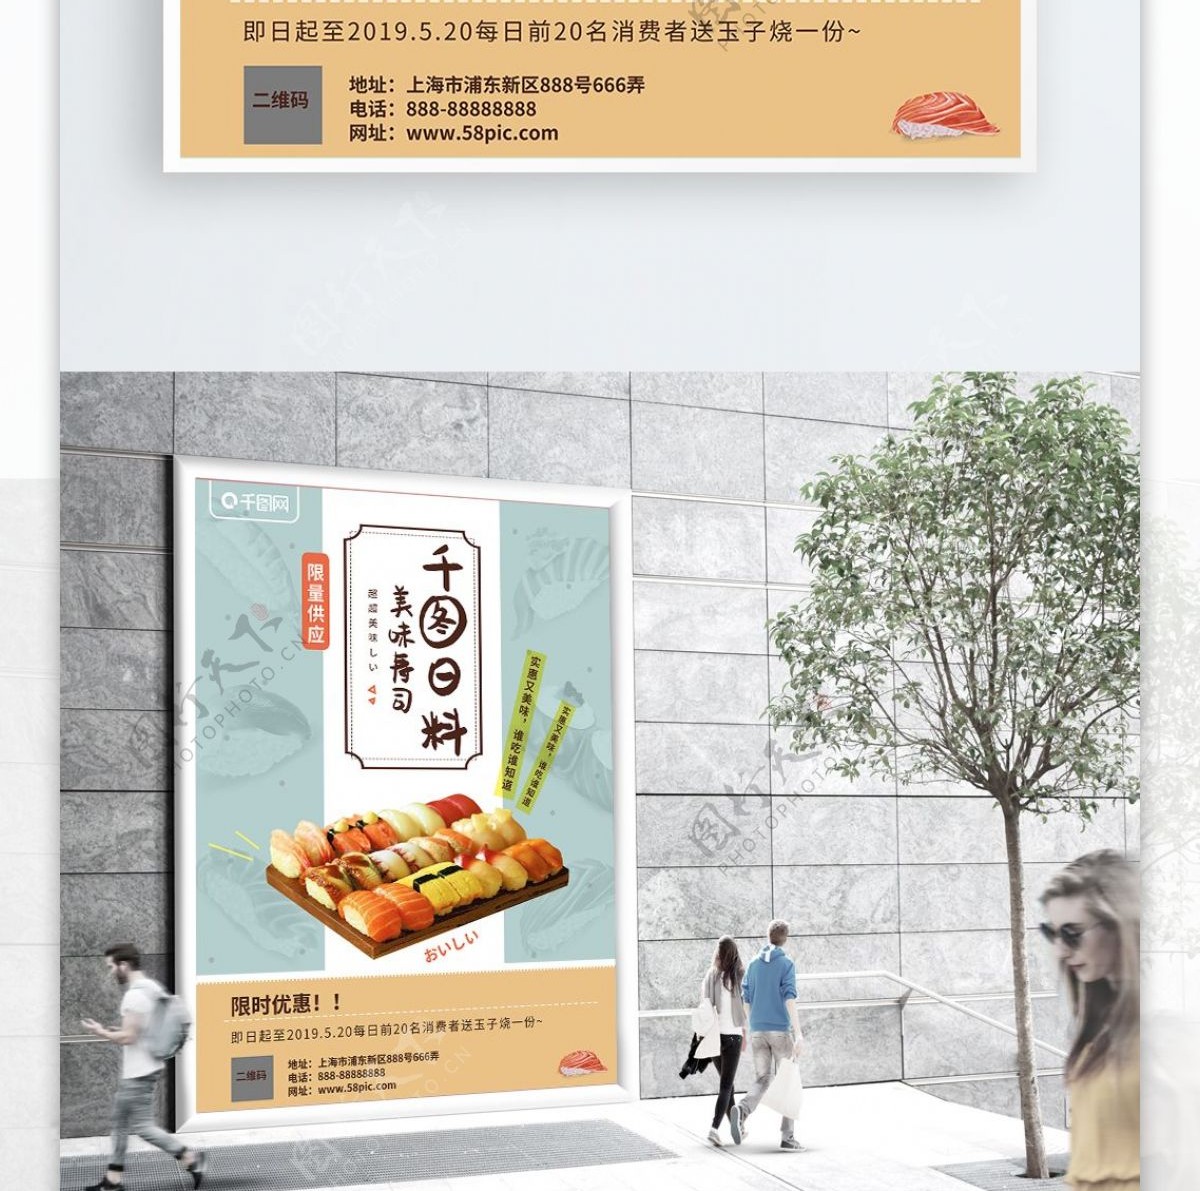 日式小清新美食海报寿司日料